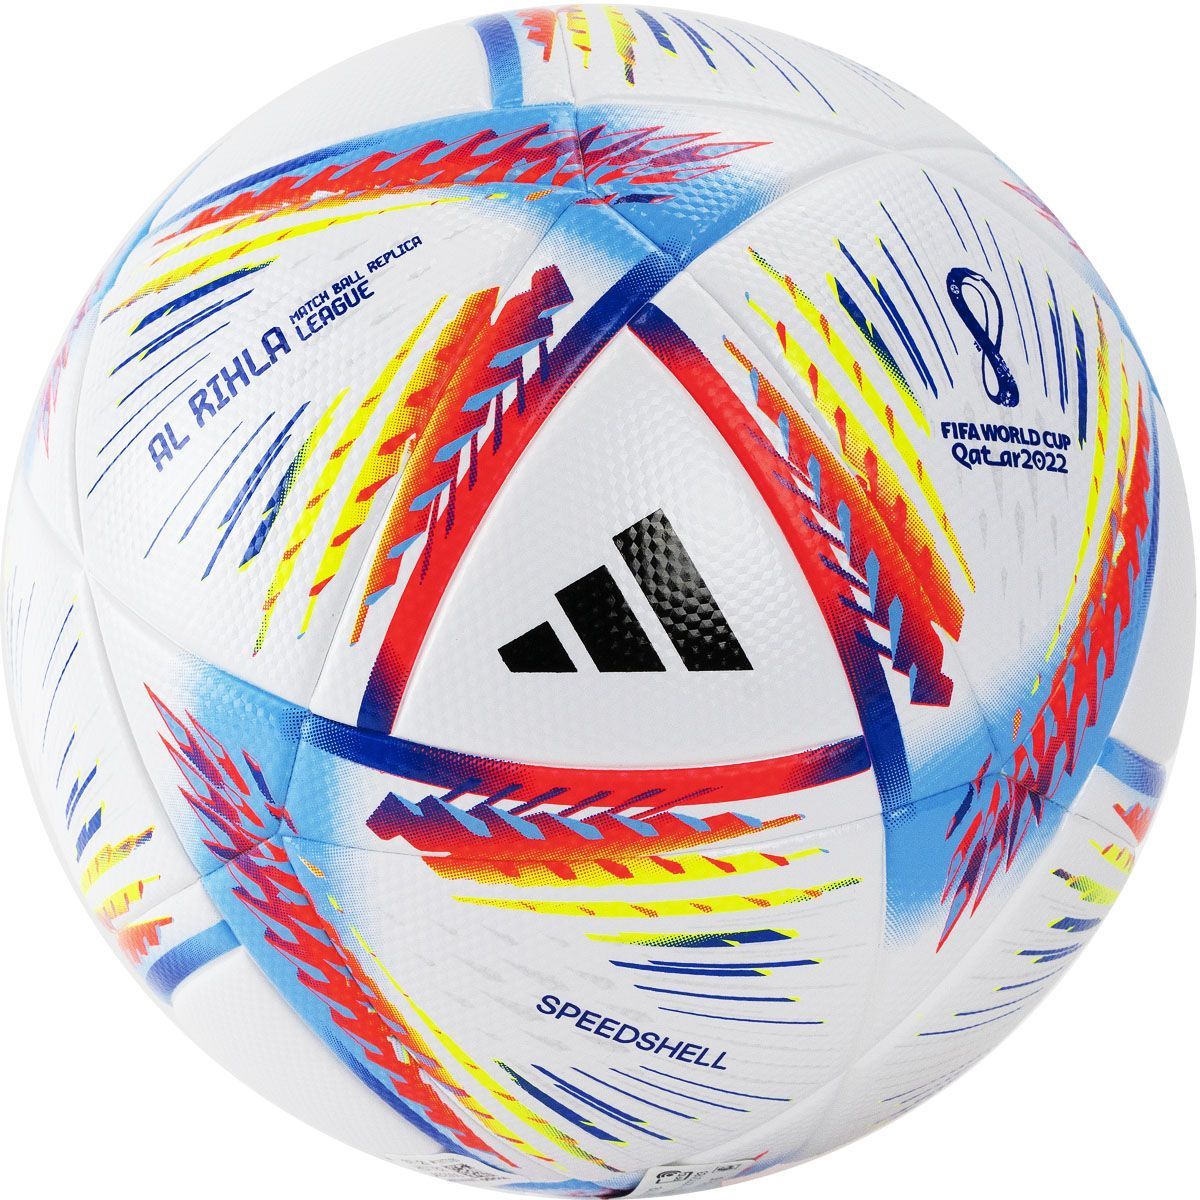 Мяч футбольный adidas wc22 Rihla. Футбольный мяч adidas Finale j350 gk3481. Мяч адидас 2022. Adidas World Cup 2022 мяч. Ball 2022